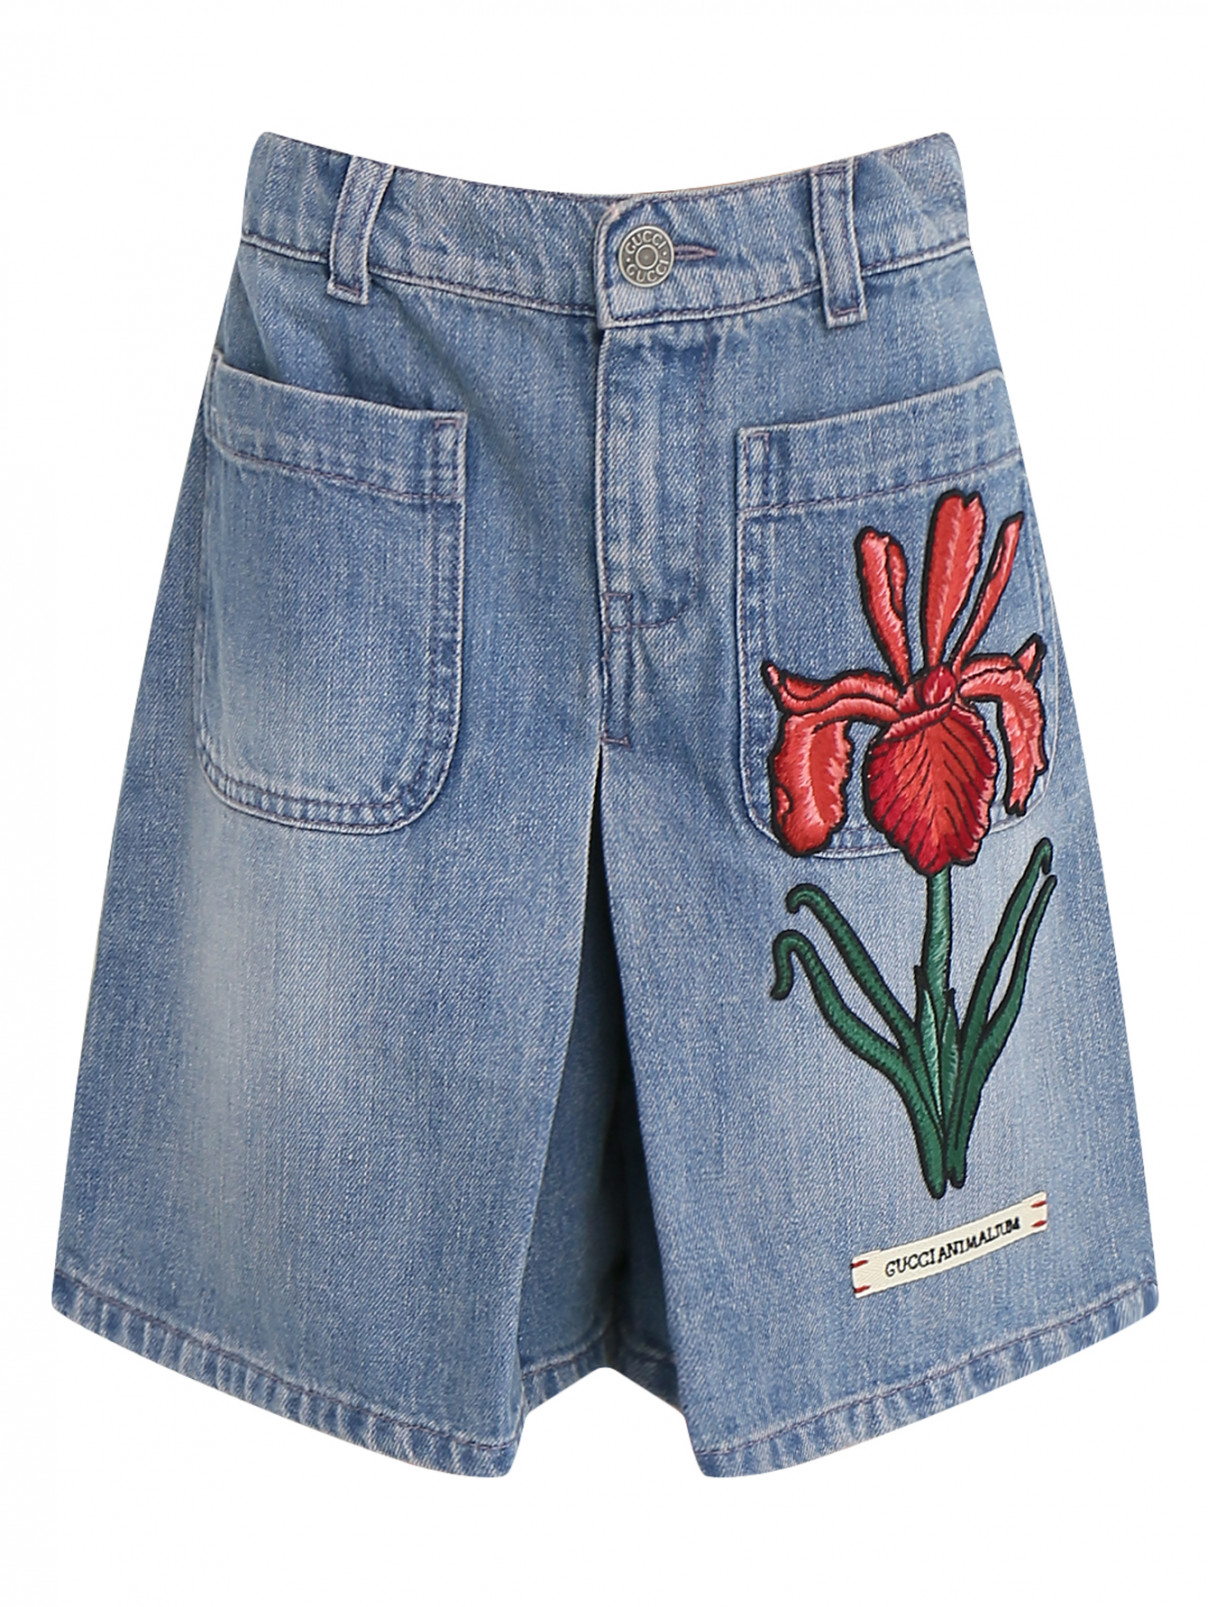 Джинсовые шорты с аппликацией Gucci  –  Общий вид  – Цвет:  Синий